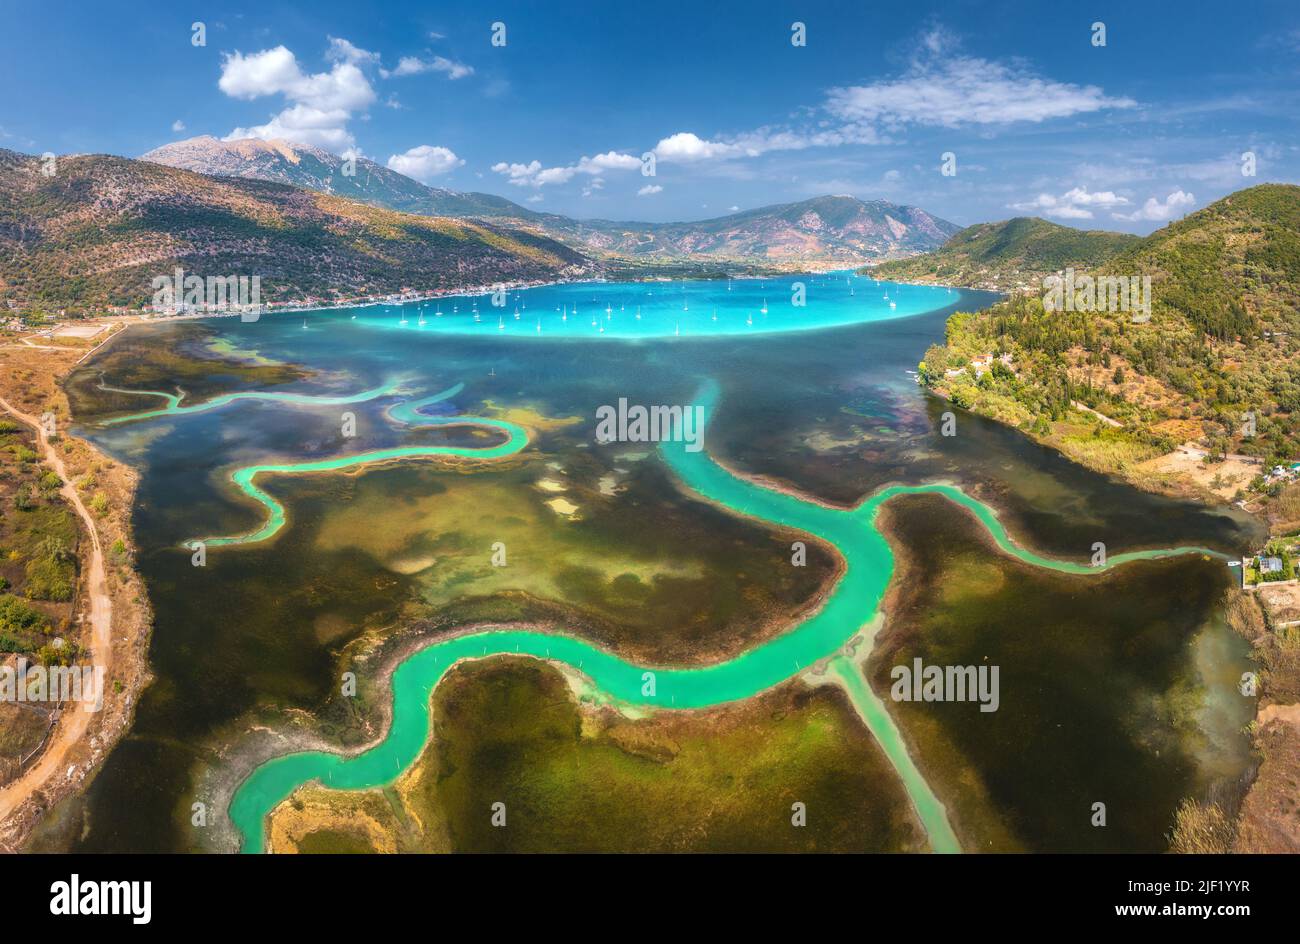 Vista aérea del delta del río, barcos y yates en laguna, montañas Foto de stock